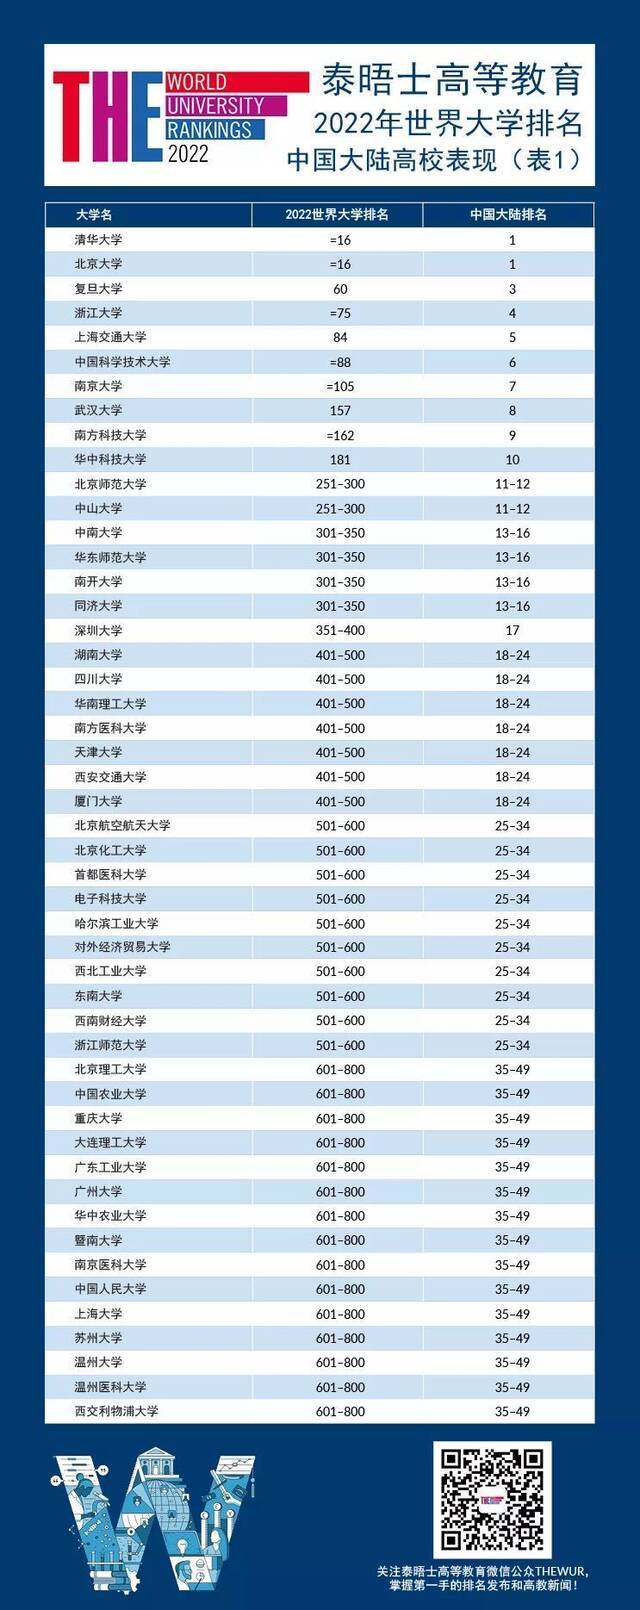 中国大陆高校在2022年世界大学排名中的表现。图/泰晤士世界大学排名微信公众号